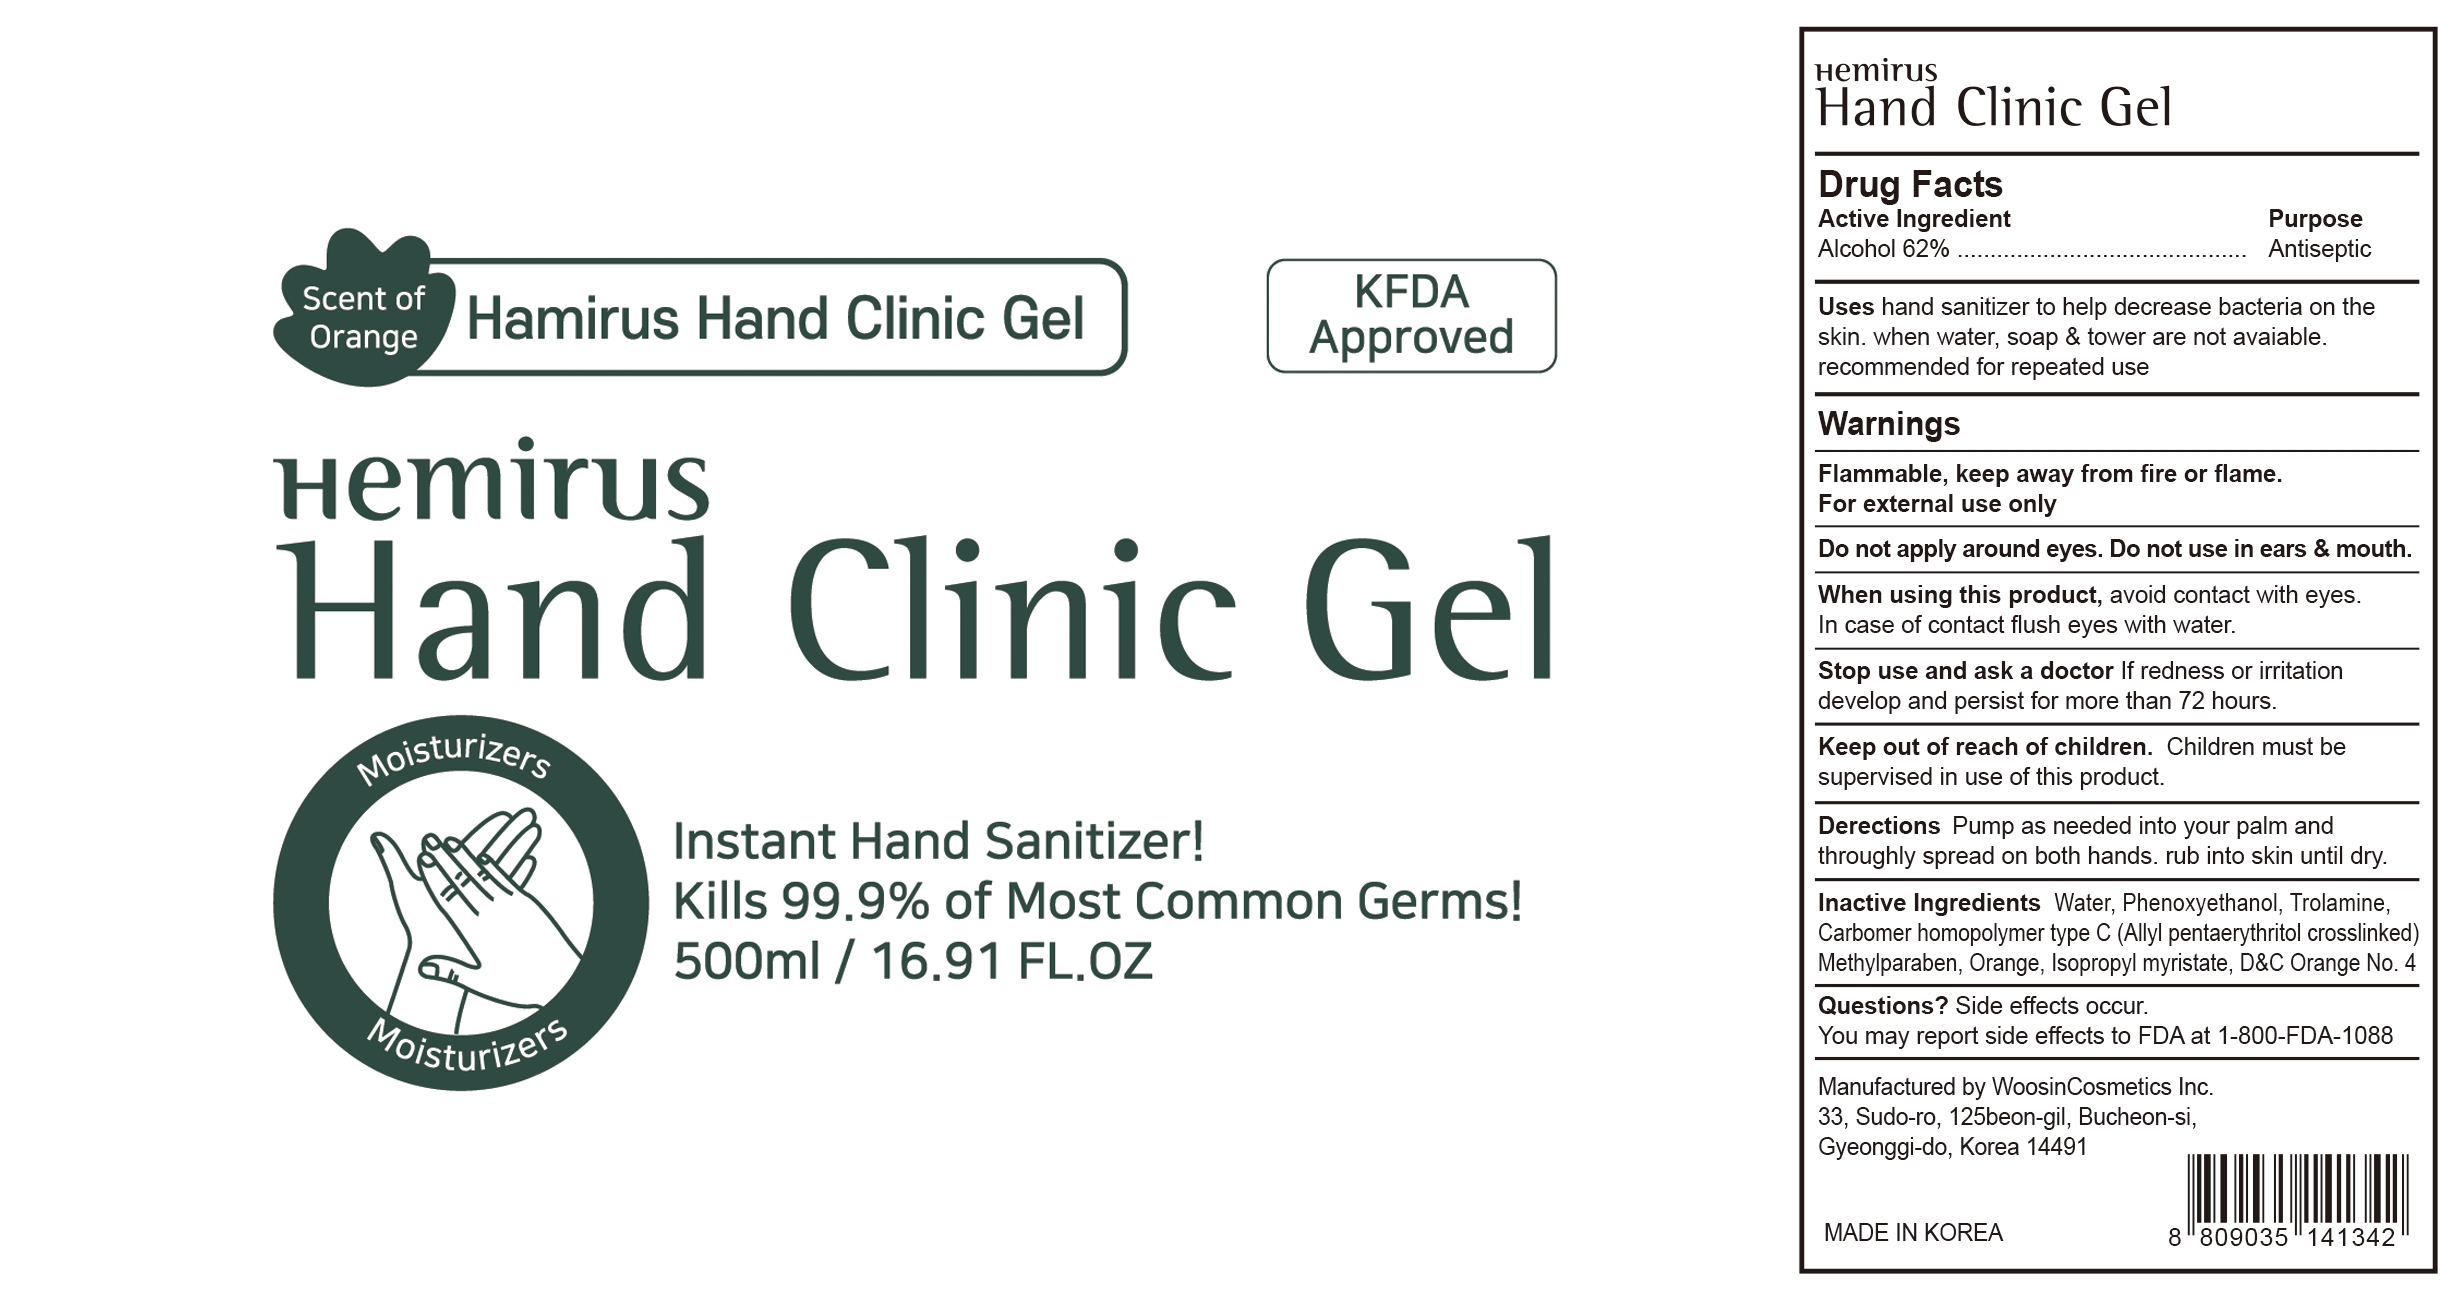 Hemirus Hand Clinic Gel